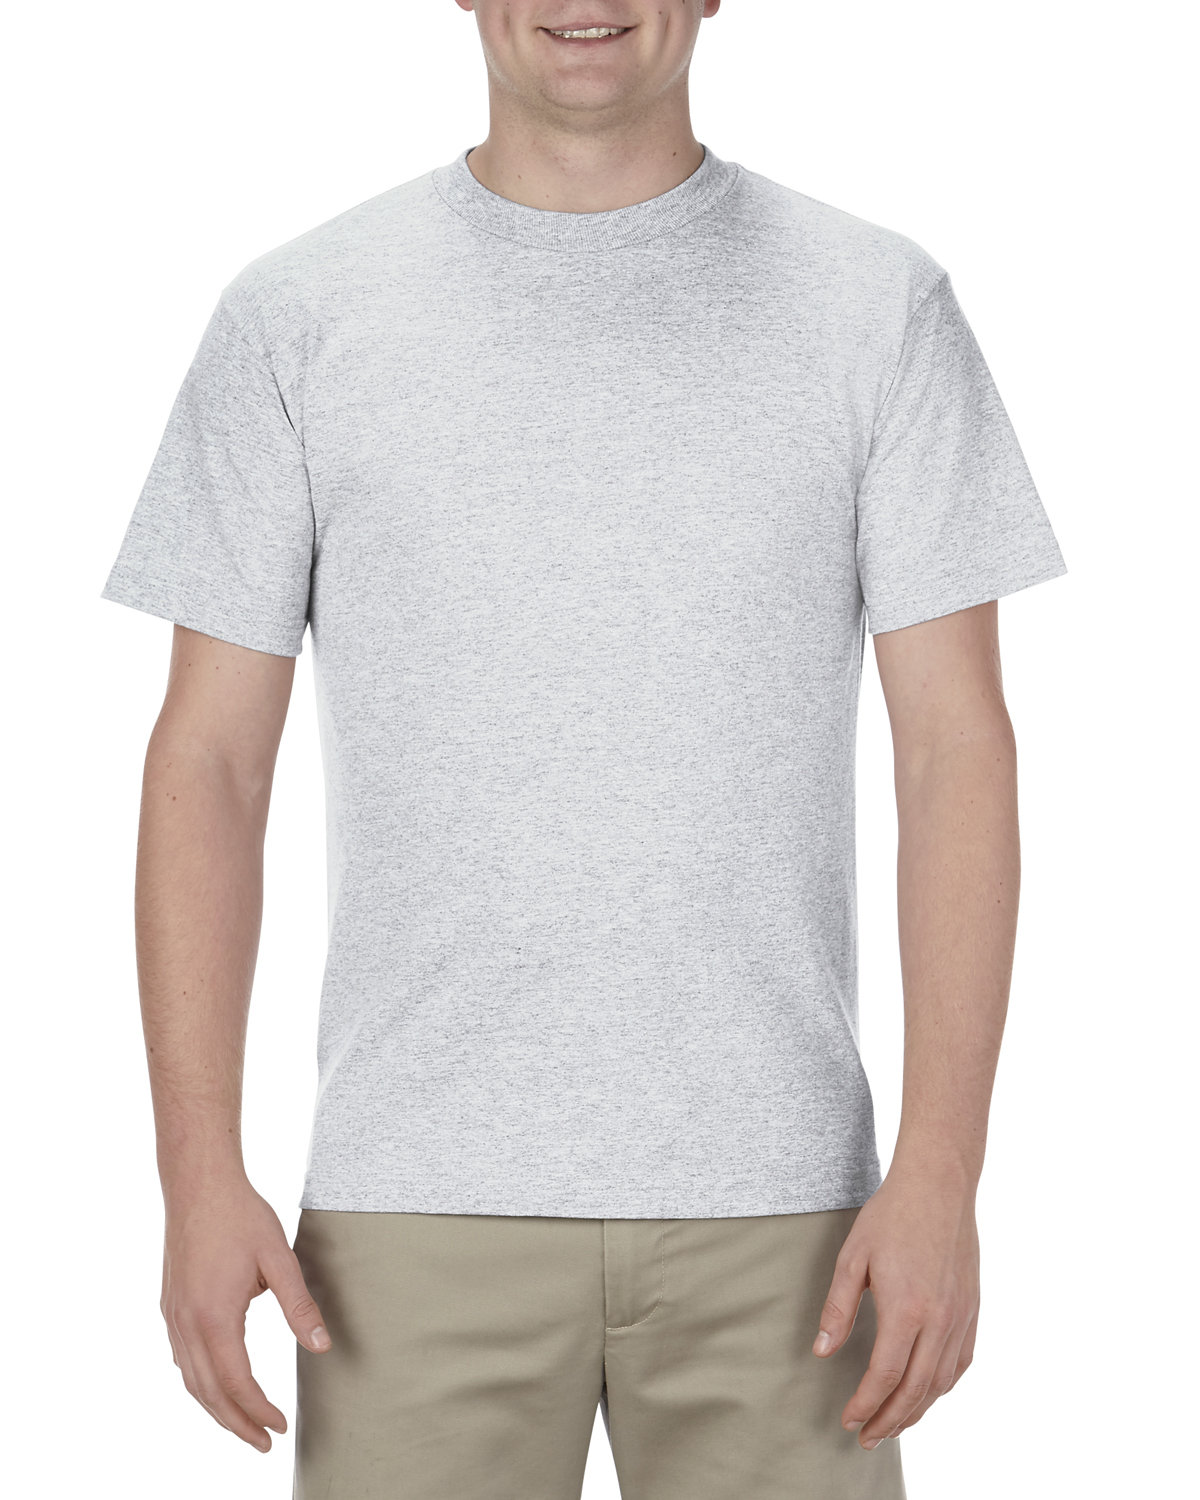 Alstyle Adult 6.0 oz., 100% Cotton T-Shirt ASH 